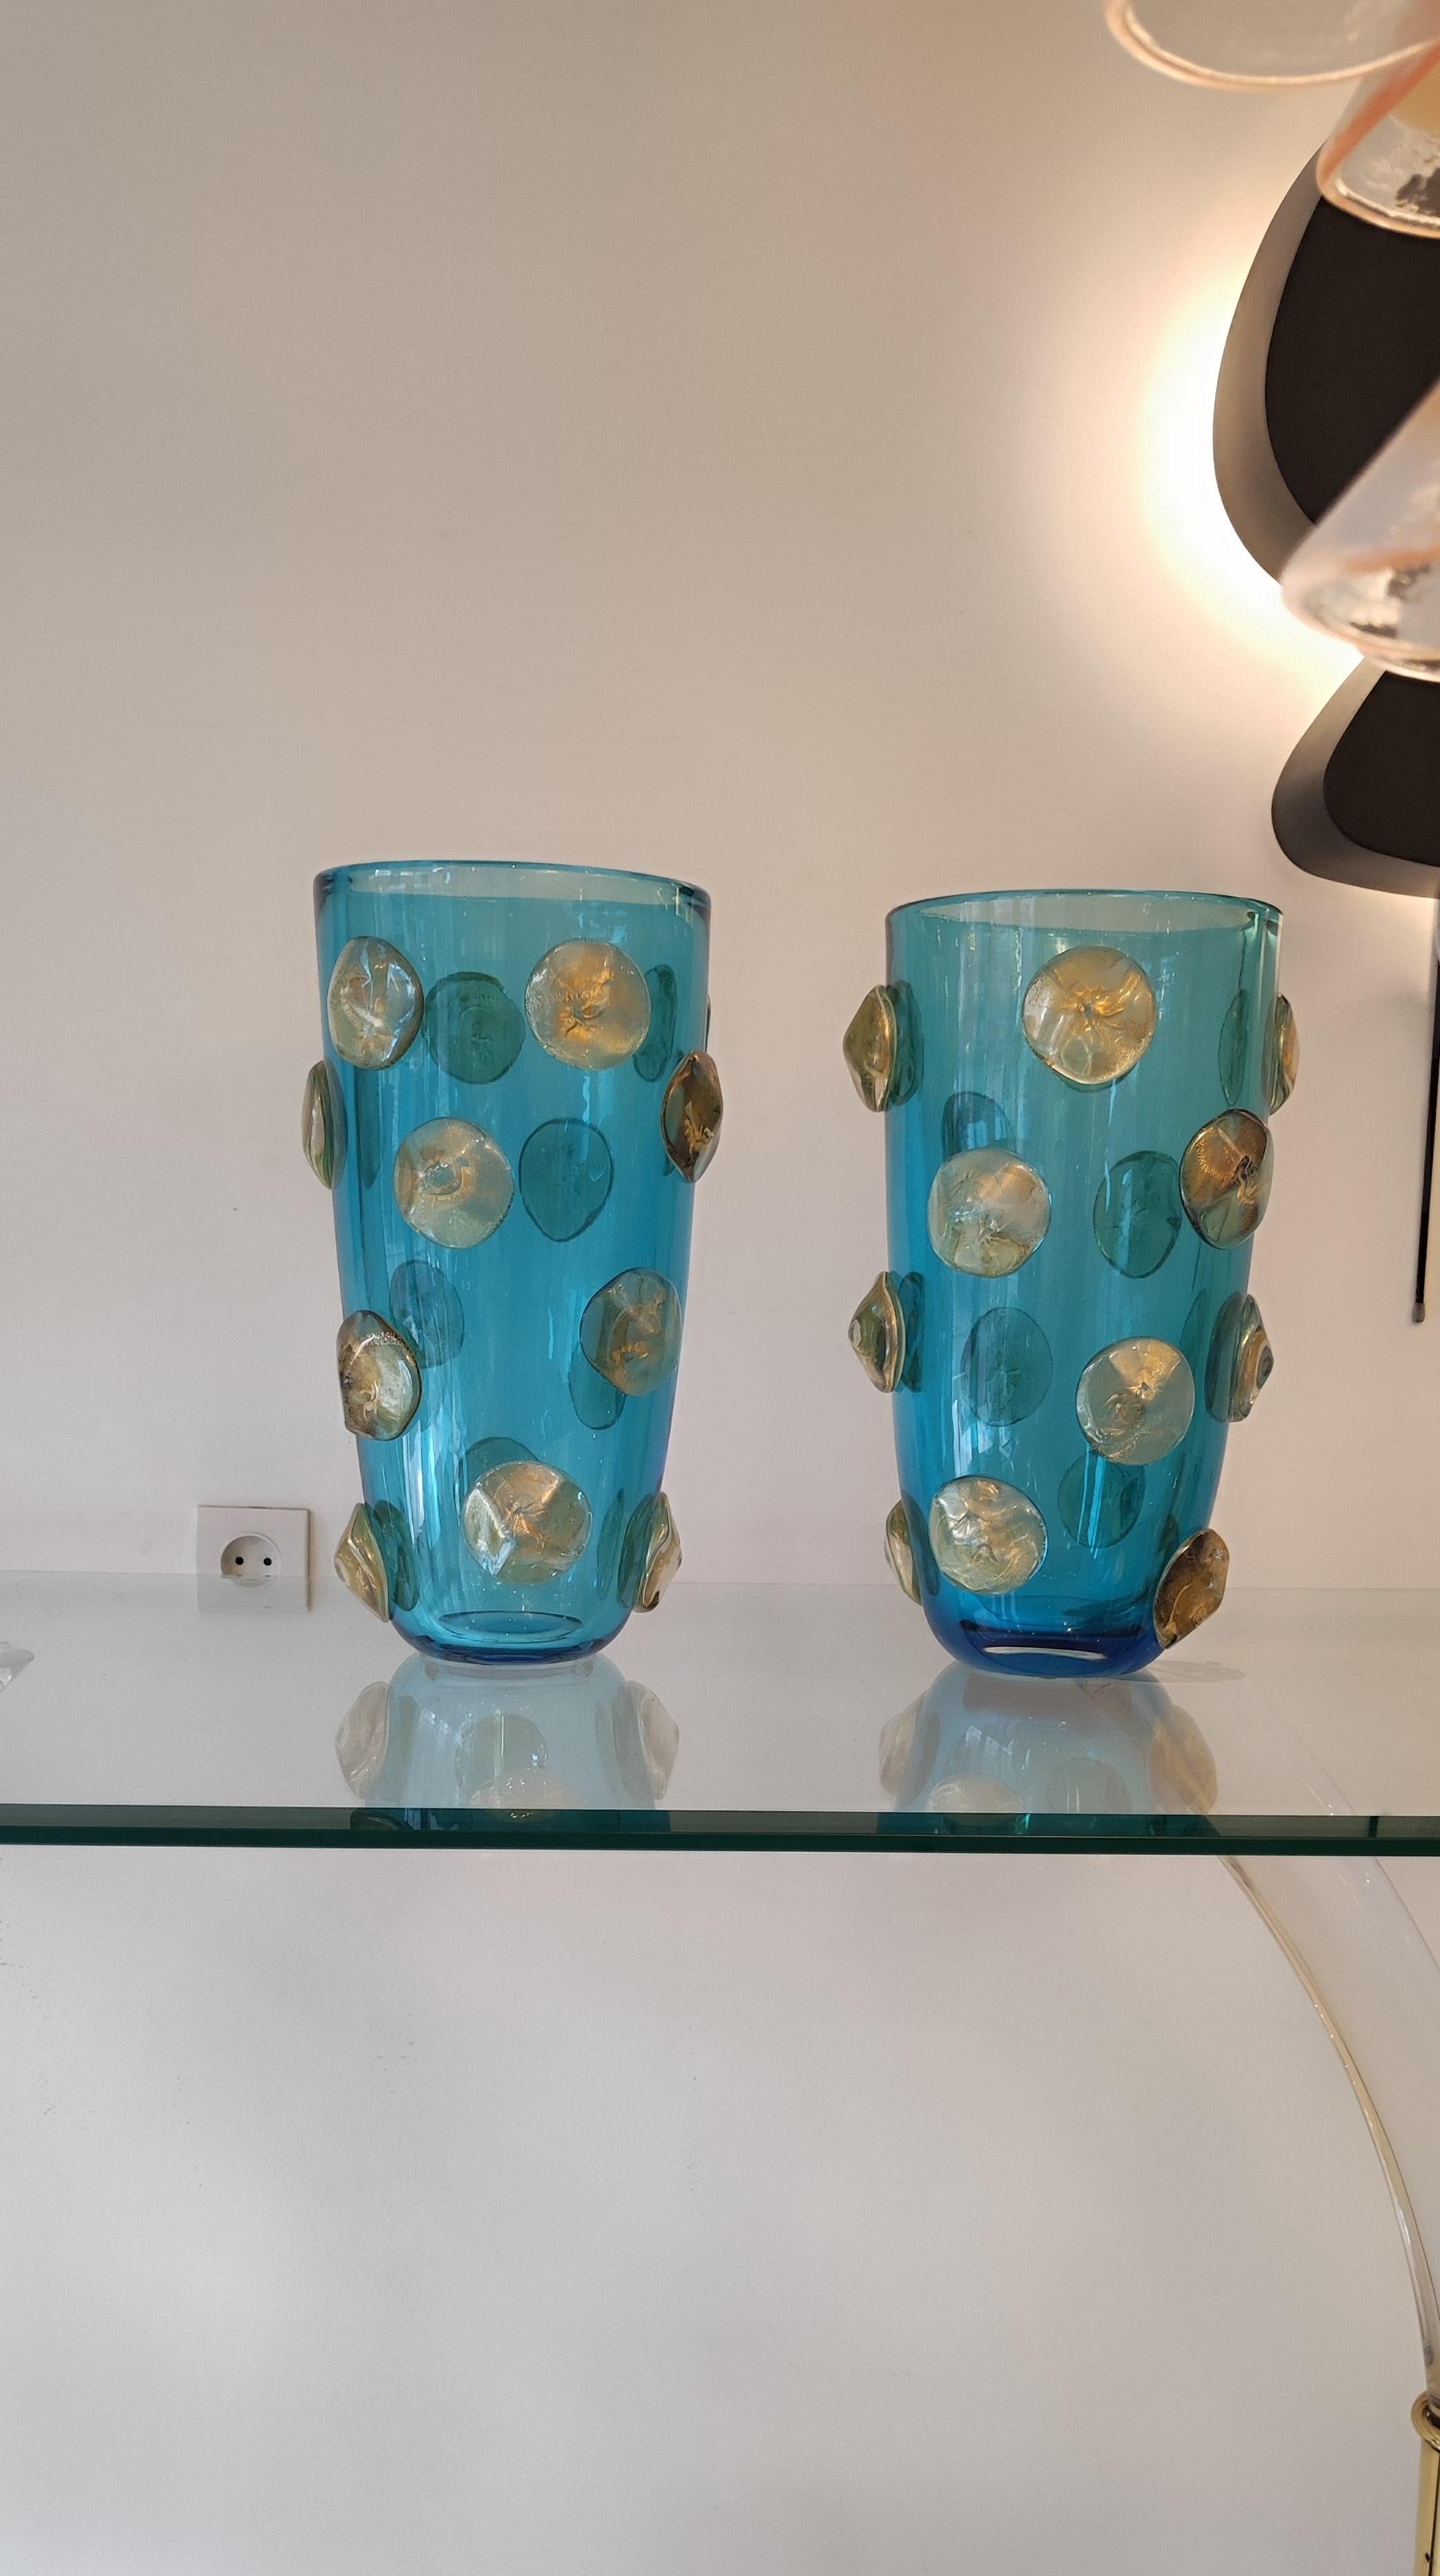 Paar mundgeblasene Vasen aus Murano-Glas, blau mit goldenen Einsätzen
Perfekter Zustand. 